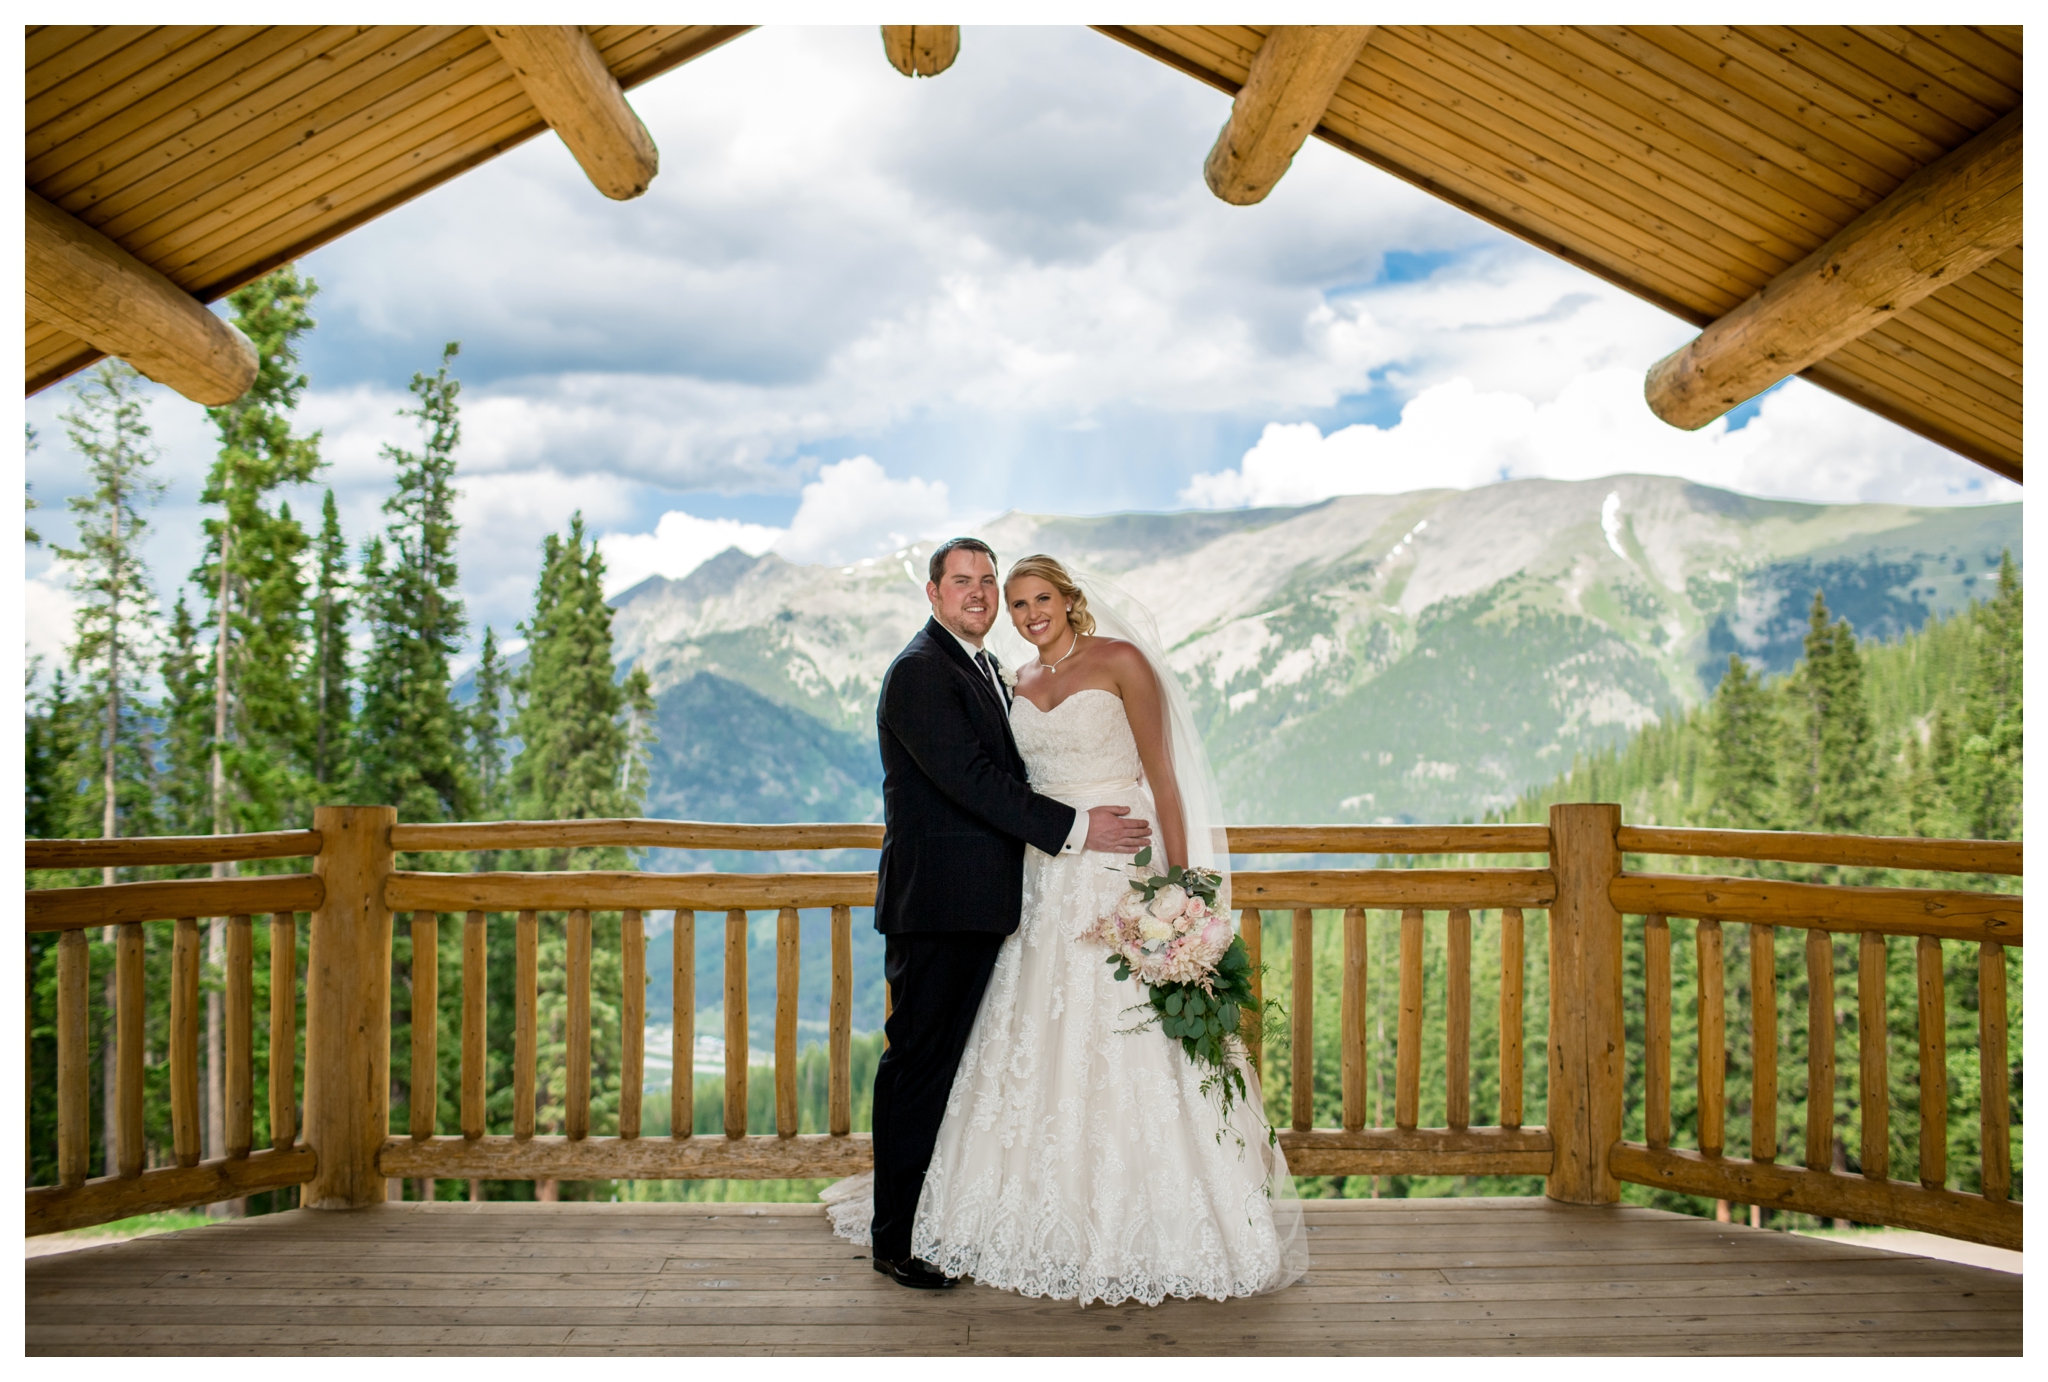 Colorado mountain wedding photography inspiration 